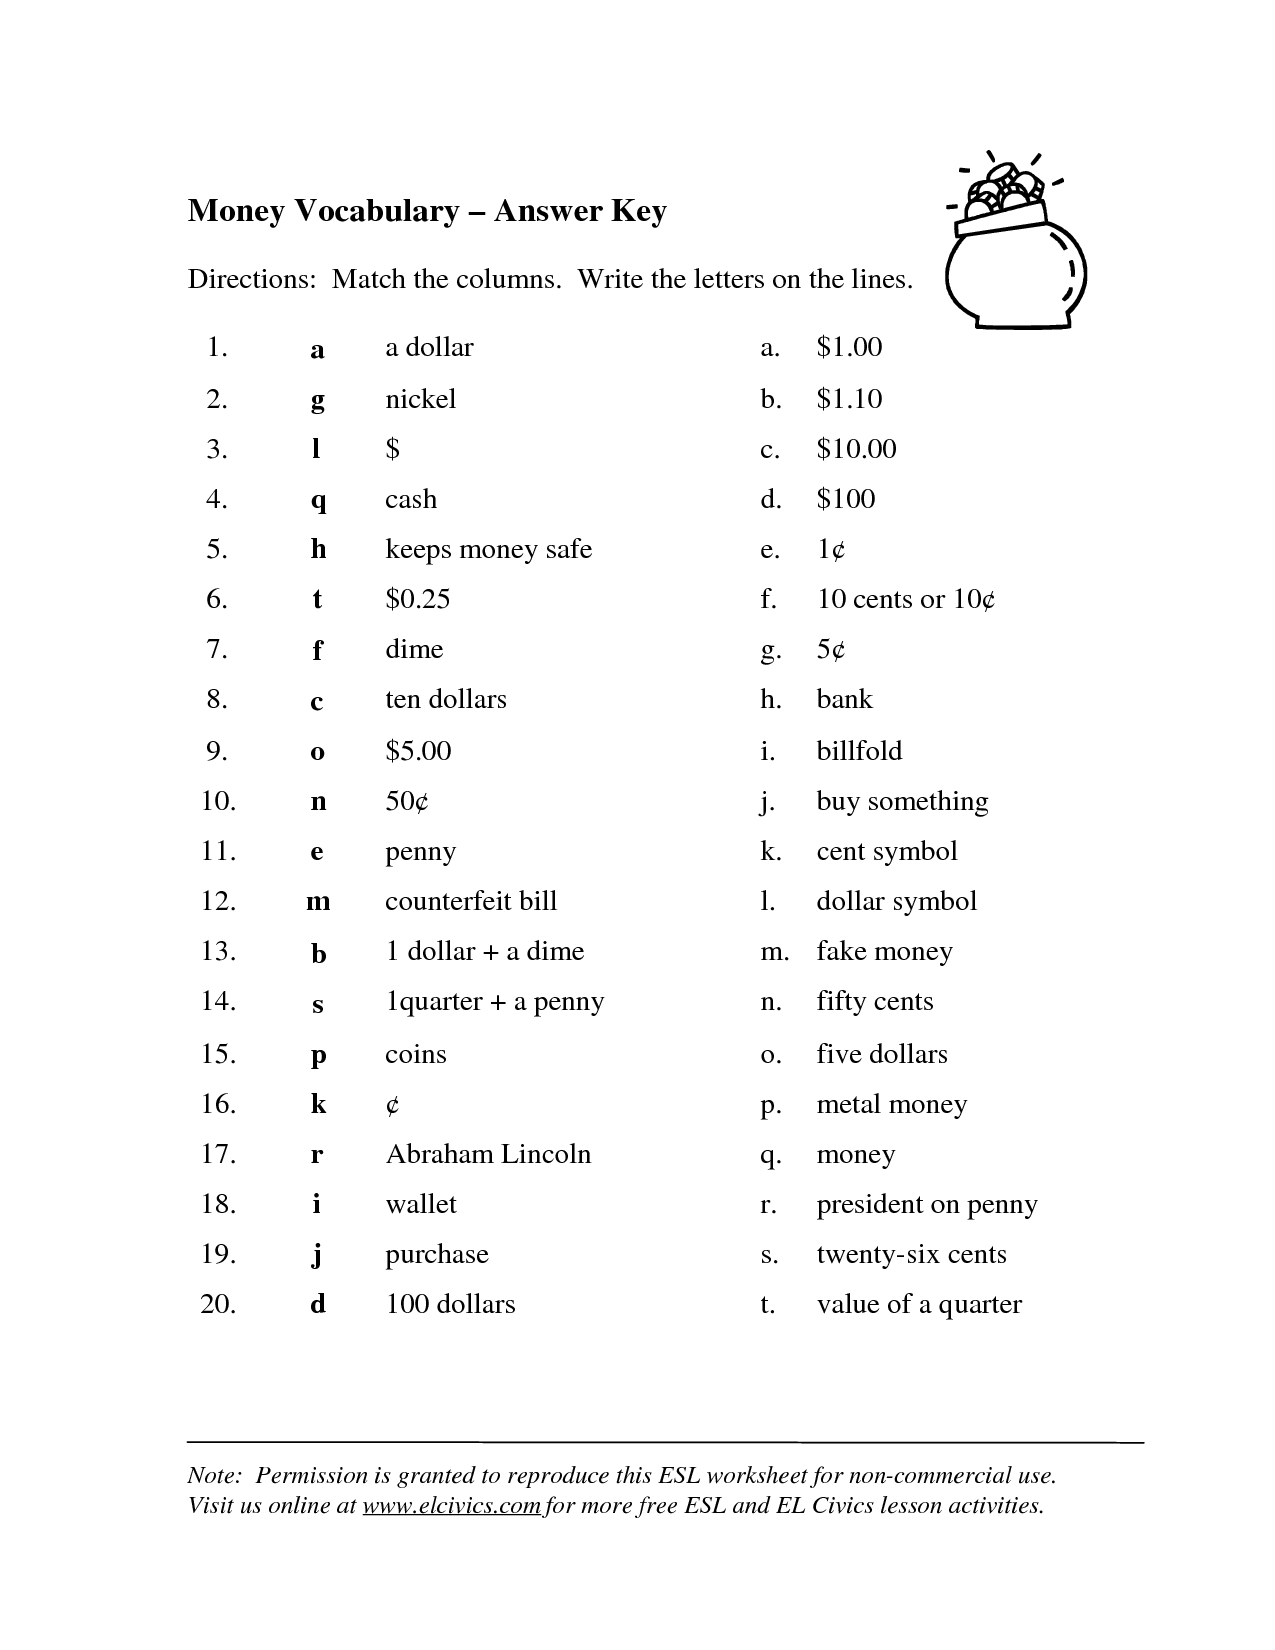 Money Vocabulary Worksheet Image